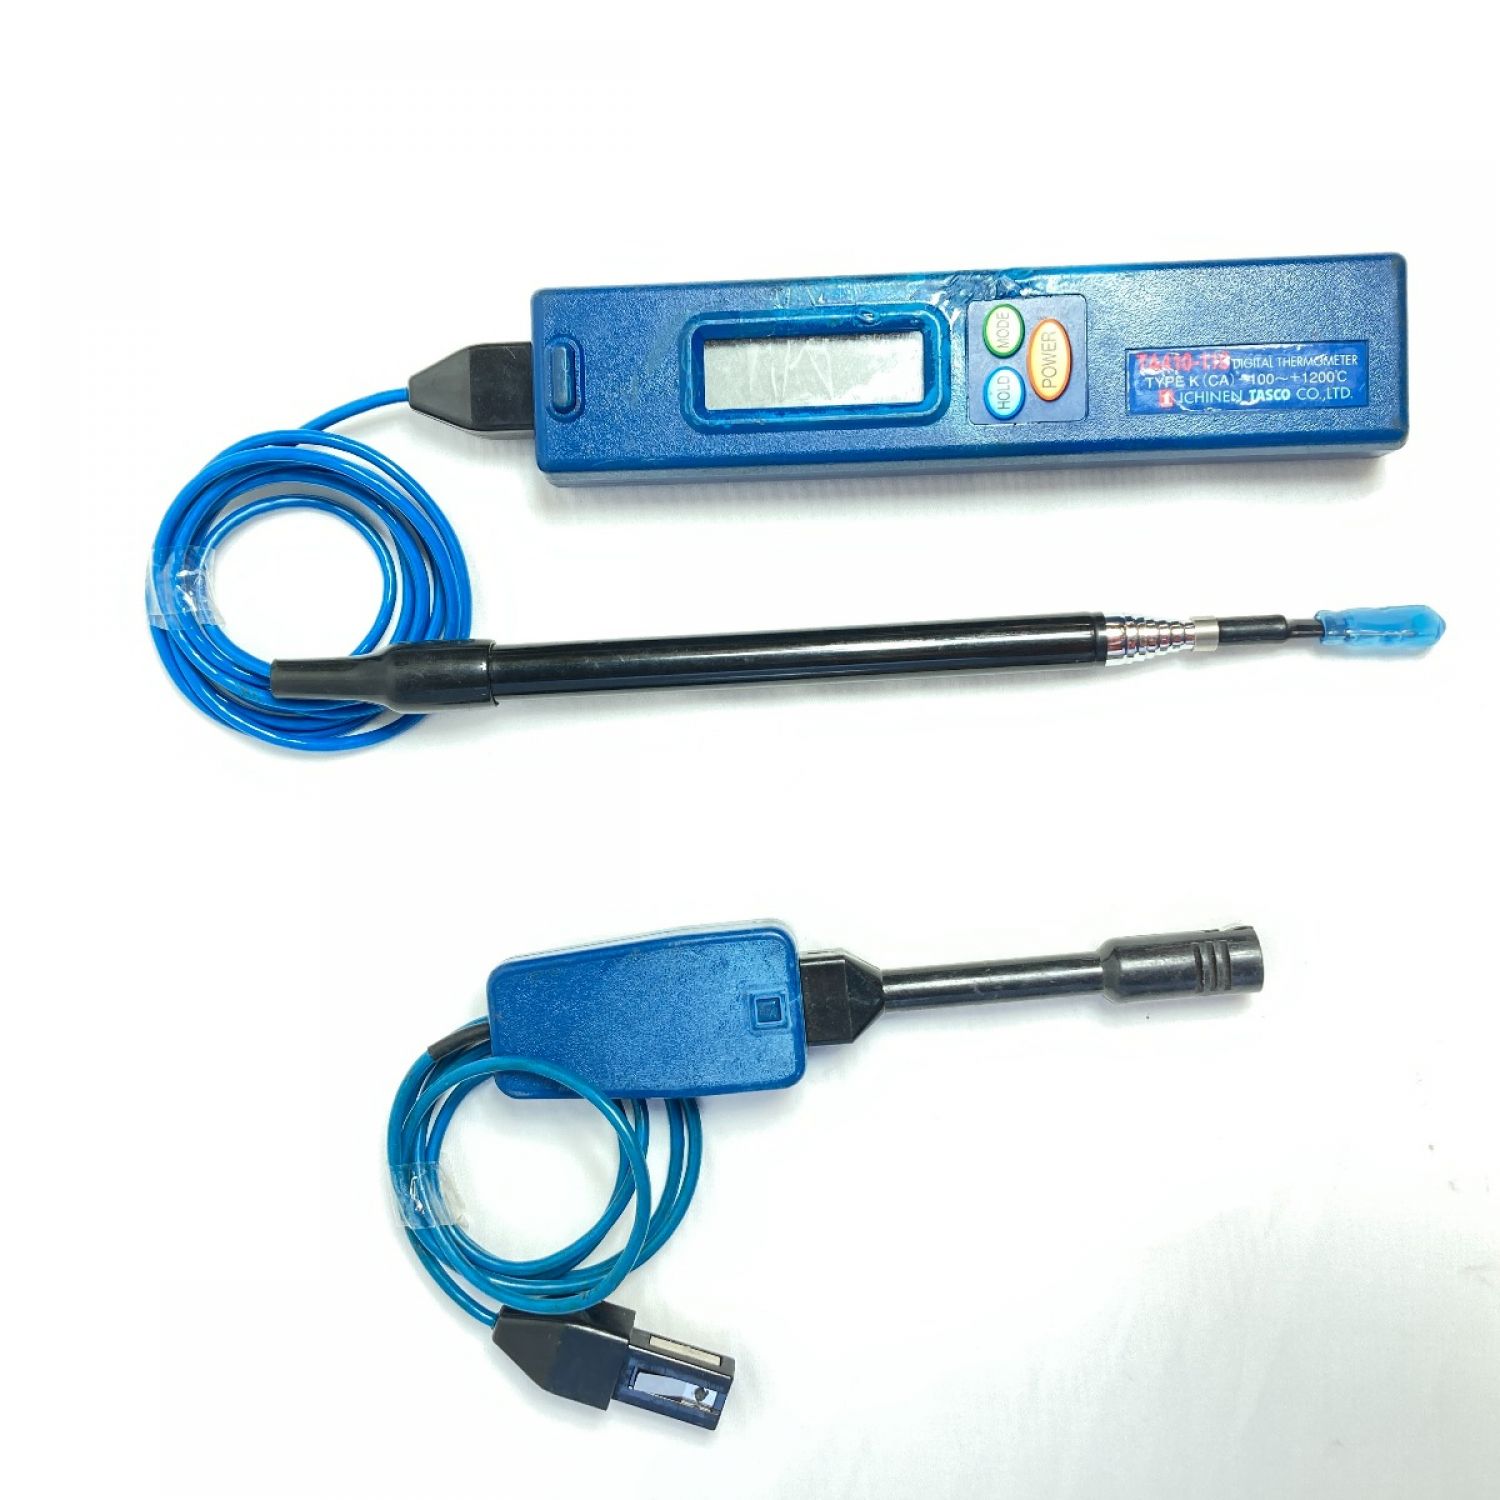 中古】 TASCO デジタル温度計 (温度センサー2個付属) ※電池カバー欠品